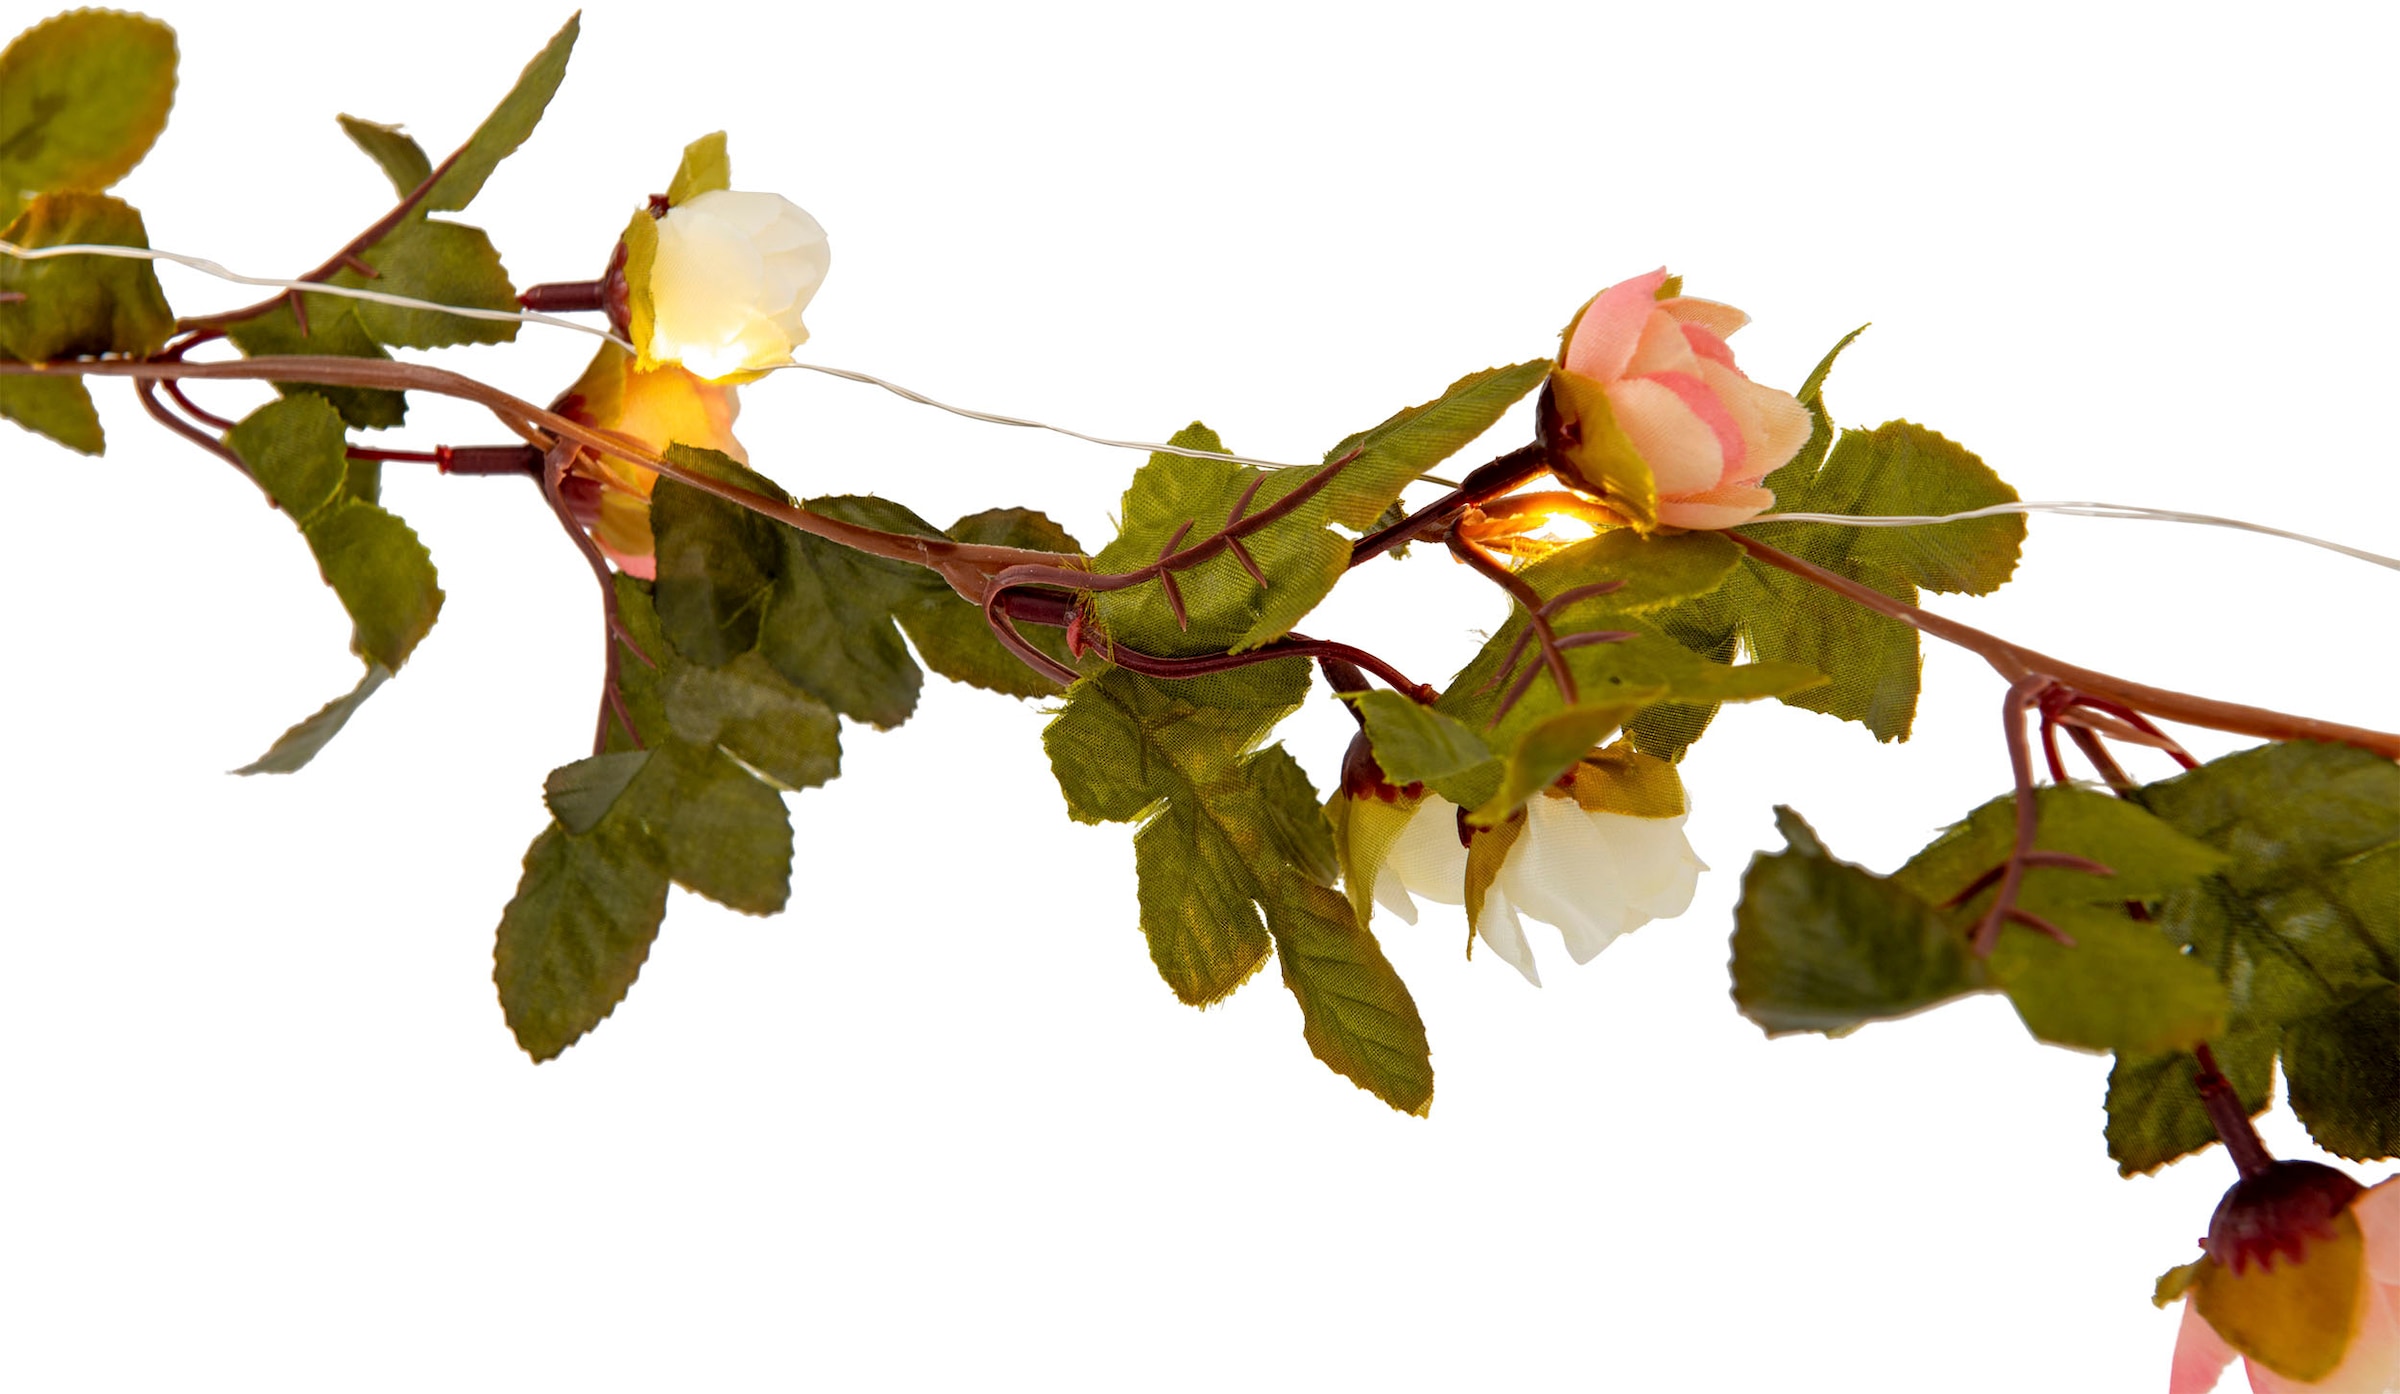 näve LED-Lichterkette »Röschen«, weiße und rosa Rosenblüten, warmweiße LED, Länge  420cm, Zuleitung 5m bestellen | BAUR